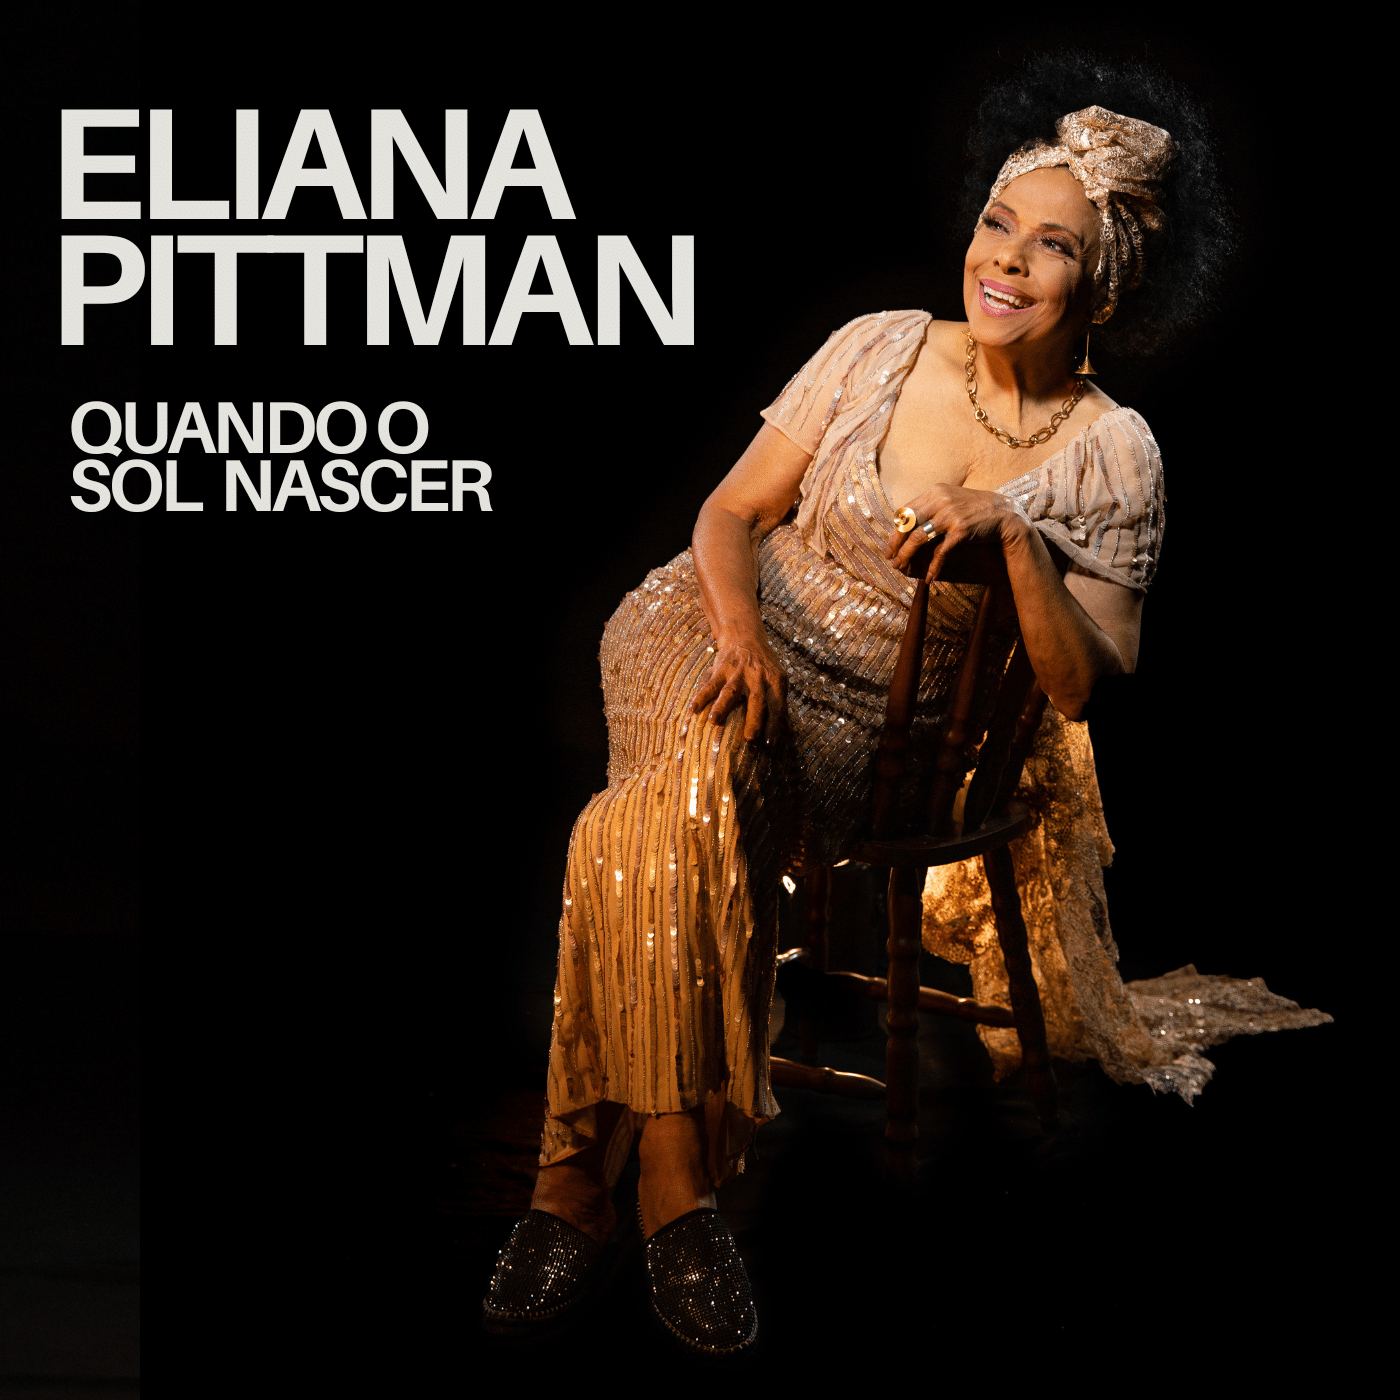 revistaprosaversoearte.com - Eliana Pittman lança novo single 'Quando o Sol Nascer'